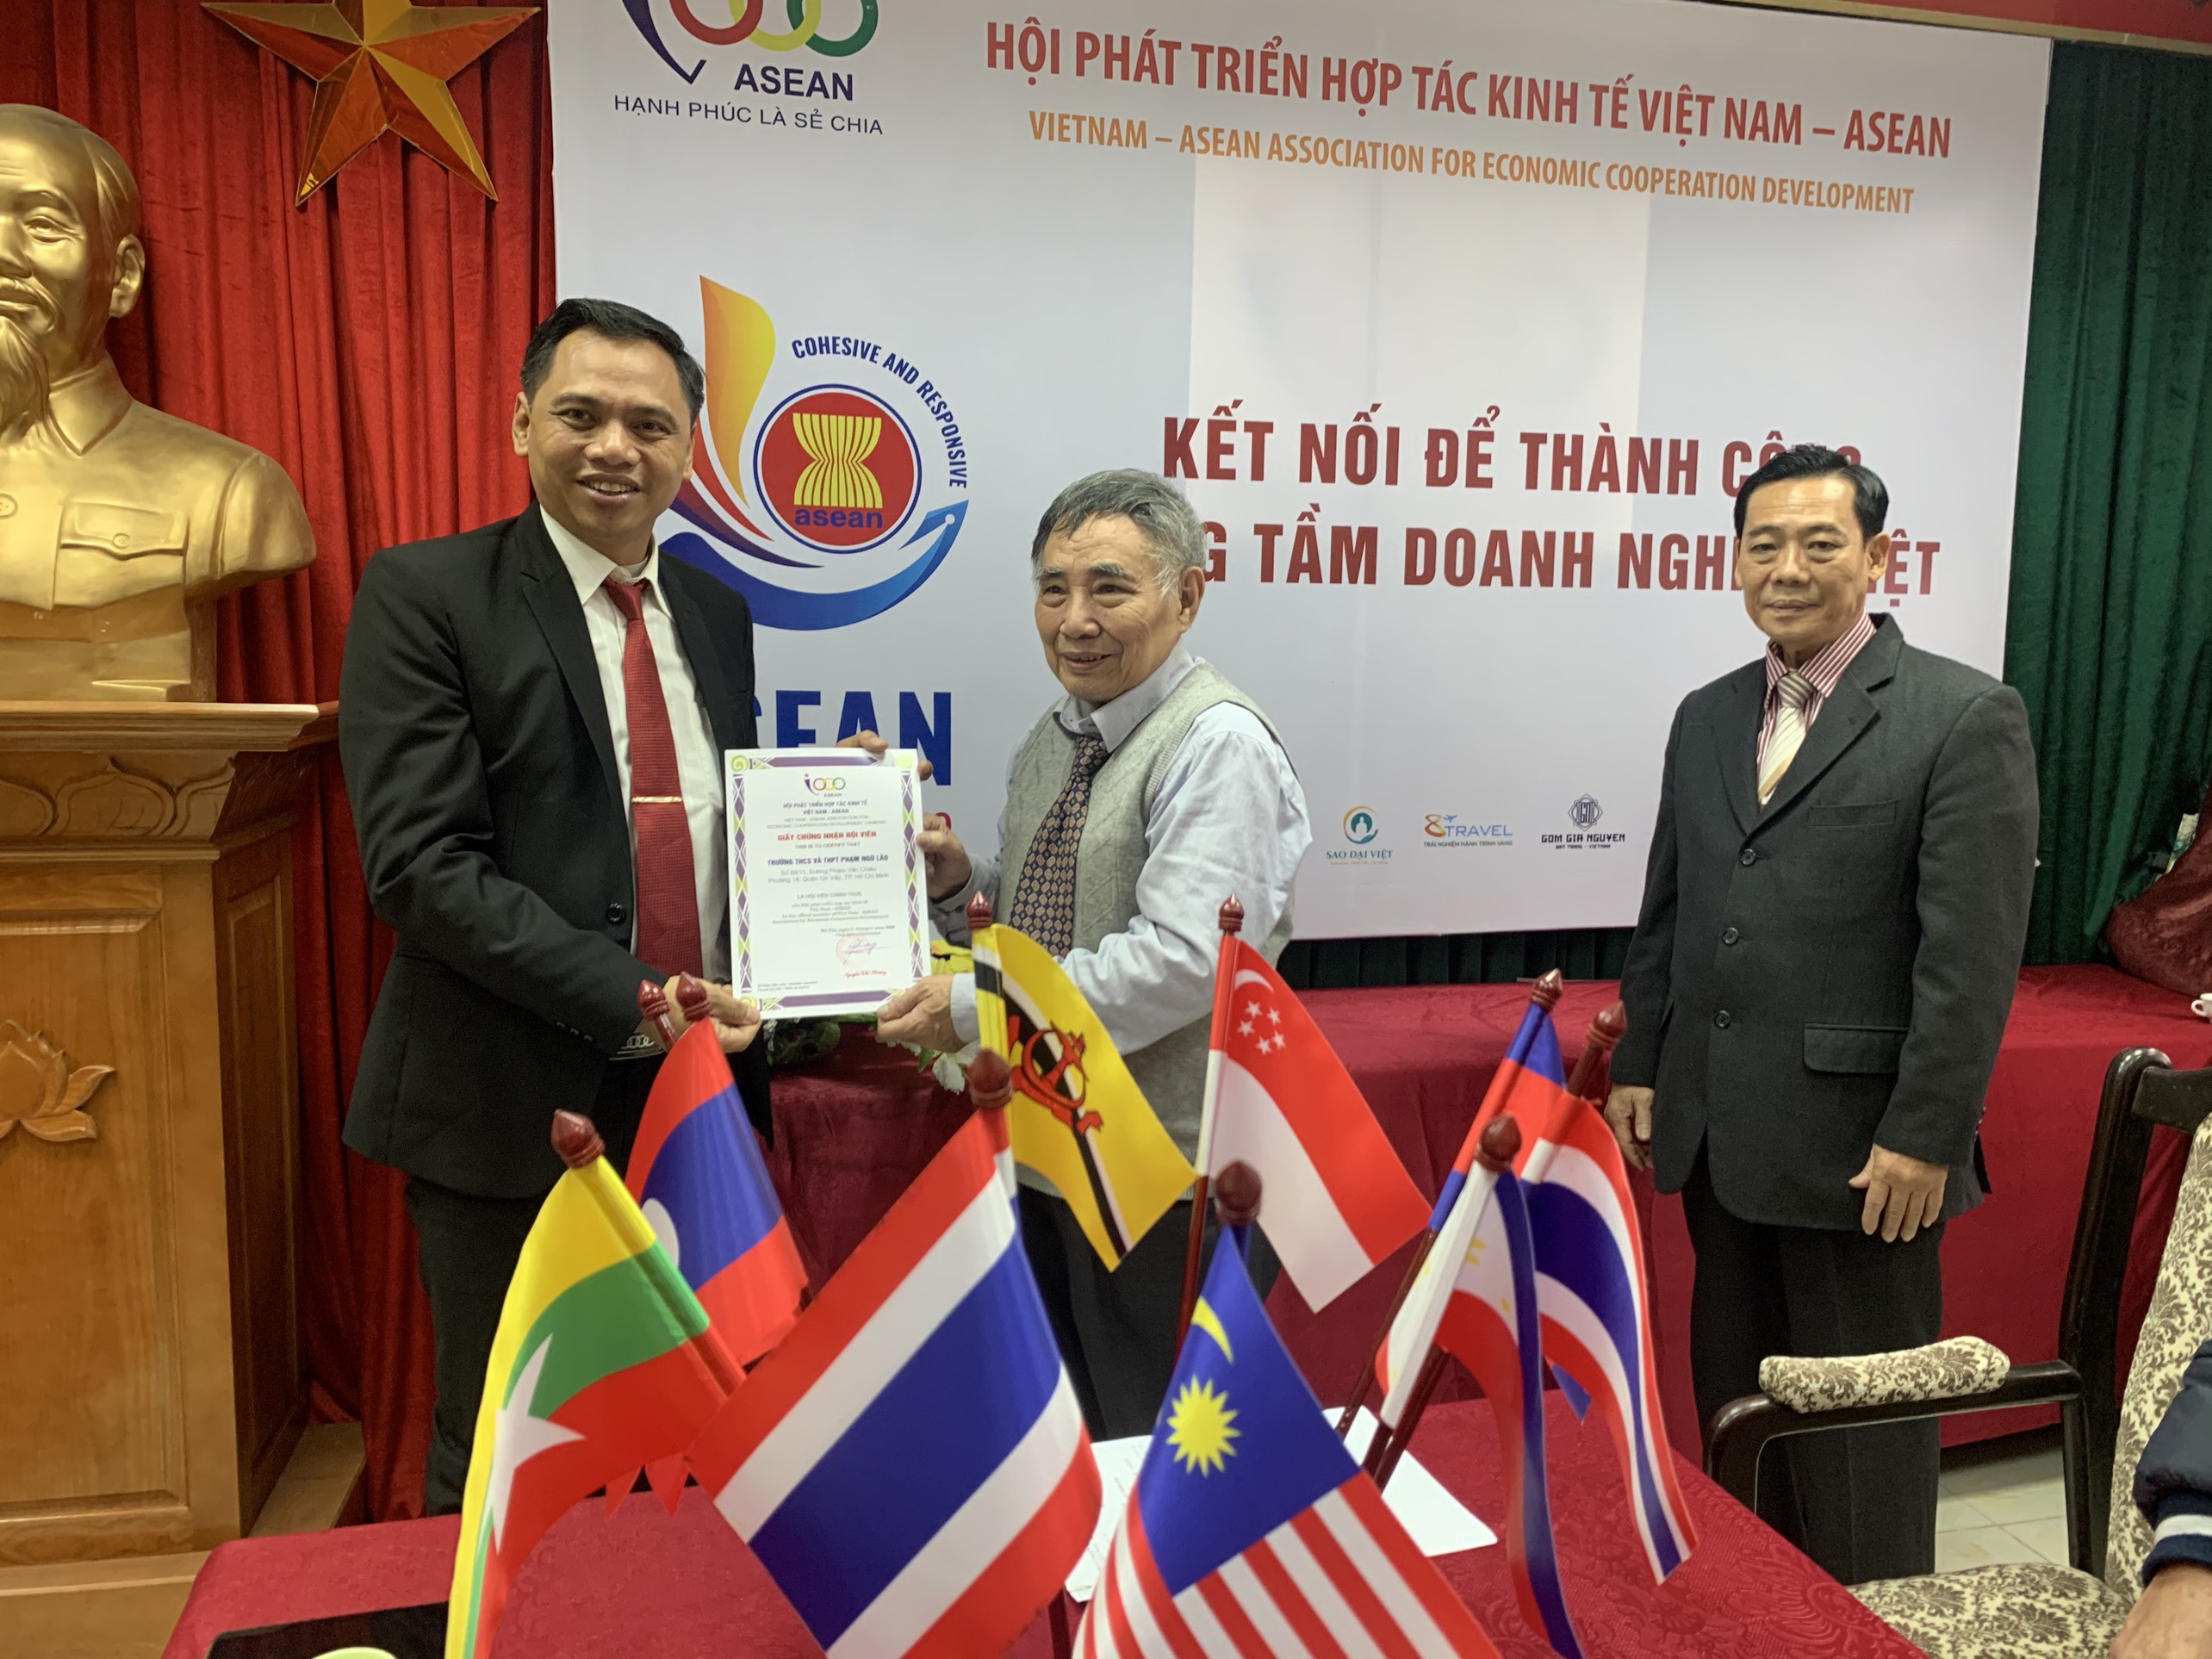 Trường THCS & THPT Phạm Ngũ Lão chính thức trở thành thành viên của Hội Phát triển Hợp tác Kinh tế VIỆT NAM - ASEAN (VASEAN).